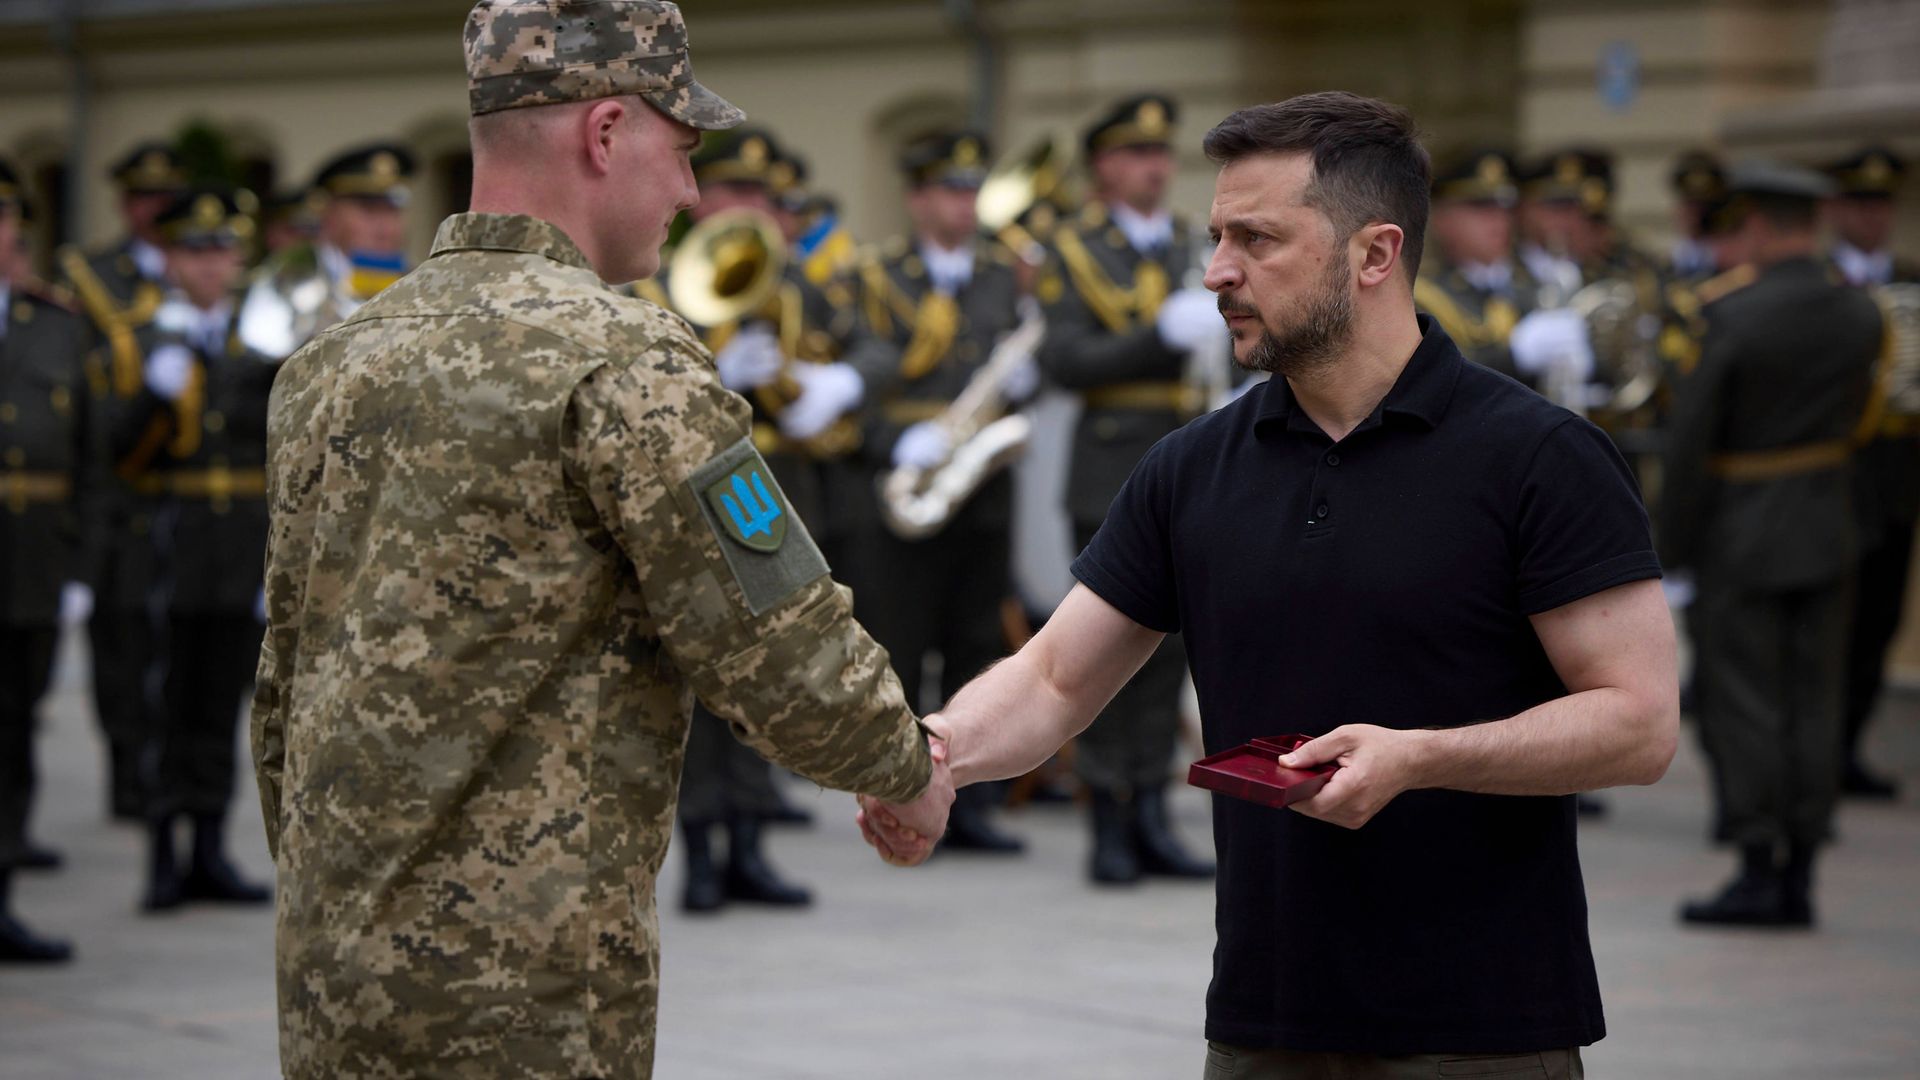 mobilisierung im ukraine-krieg: regierung plant einsatz von häftlingen im militärdienst